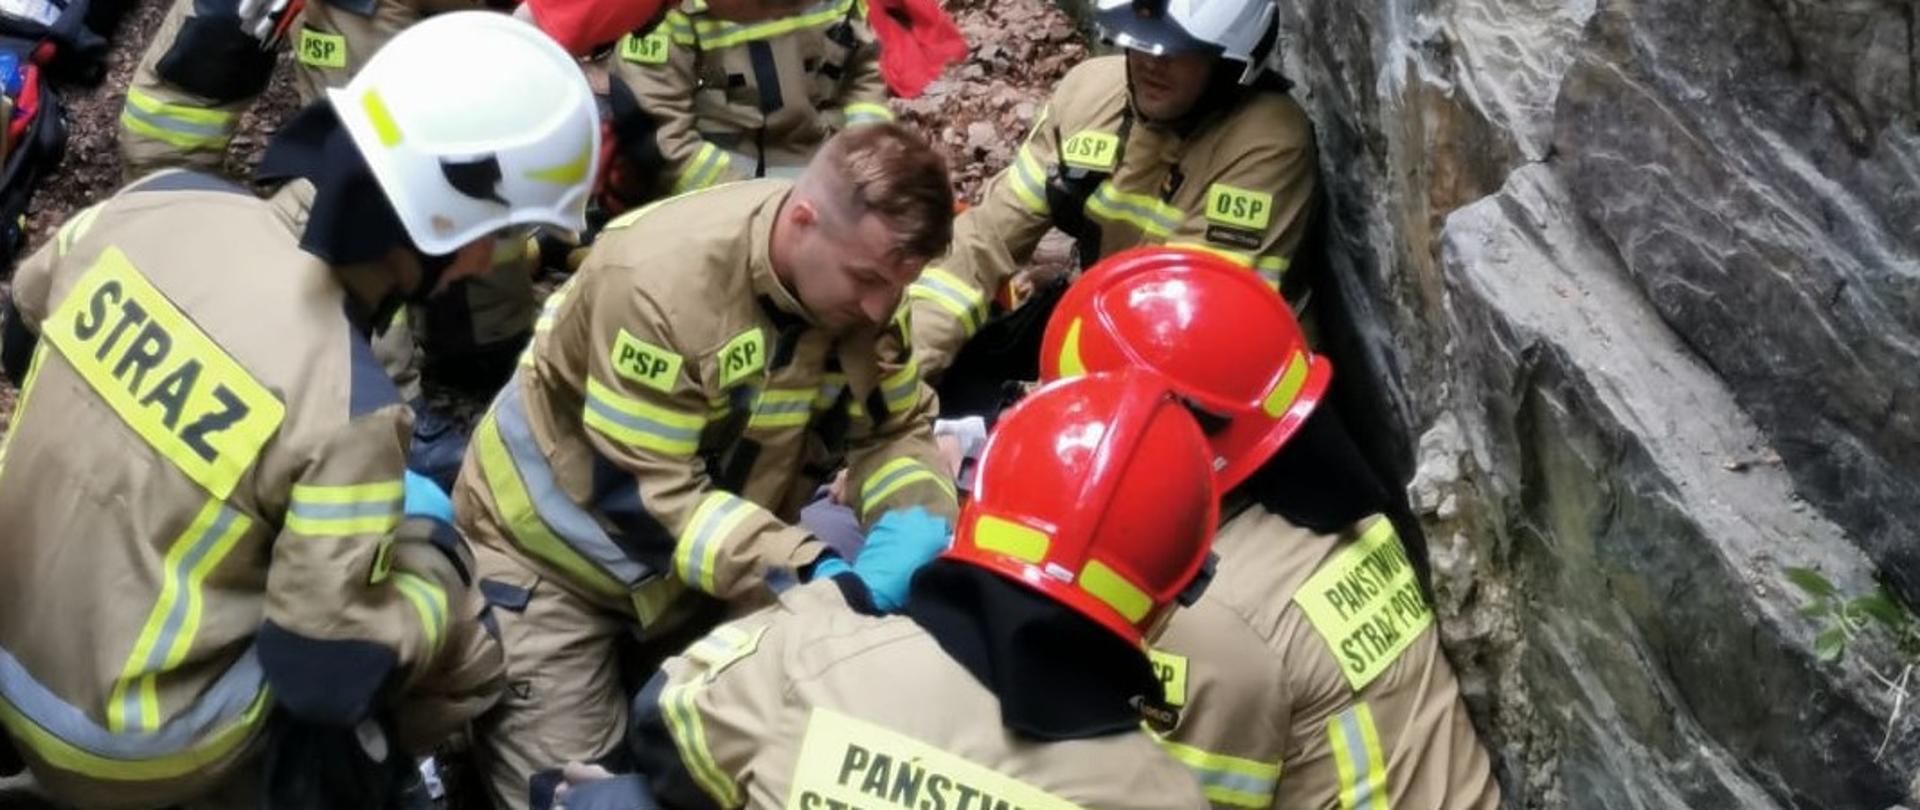 Zdjęcie przedstawia strażaków ubranych w mundury specjalne, udzielających pierwszej pomocy osobie poszkodowanej w Górach Opawskich.